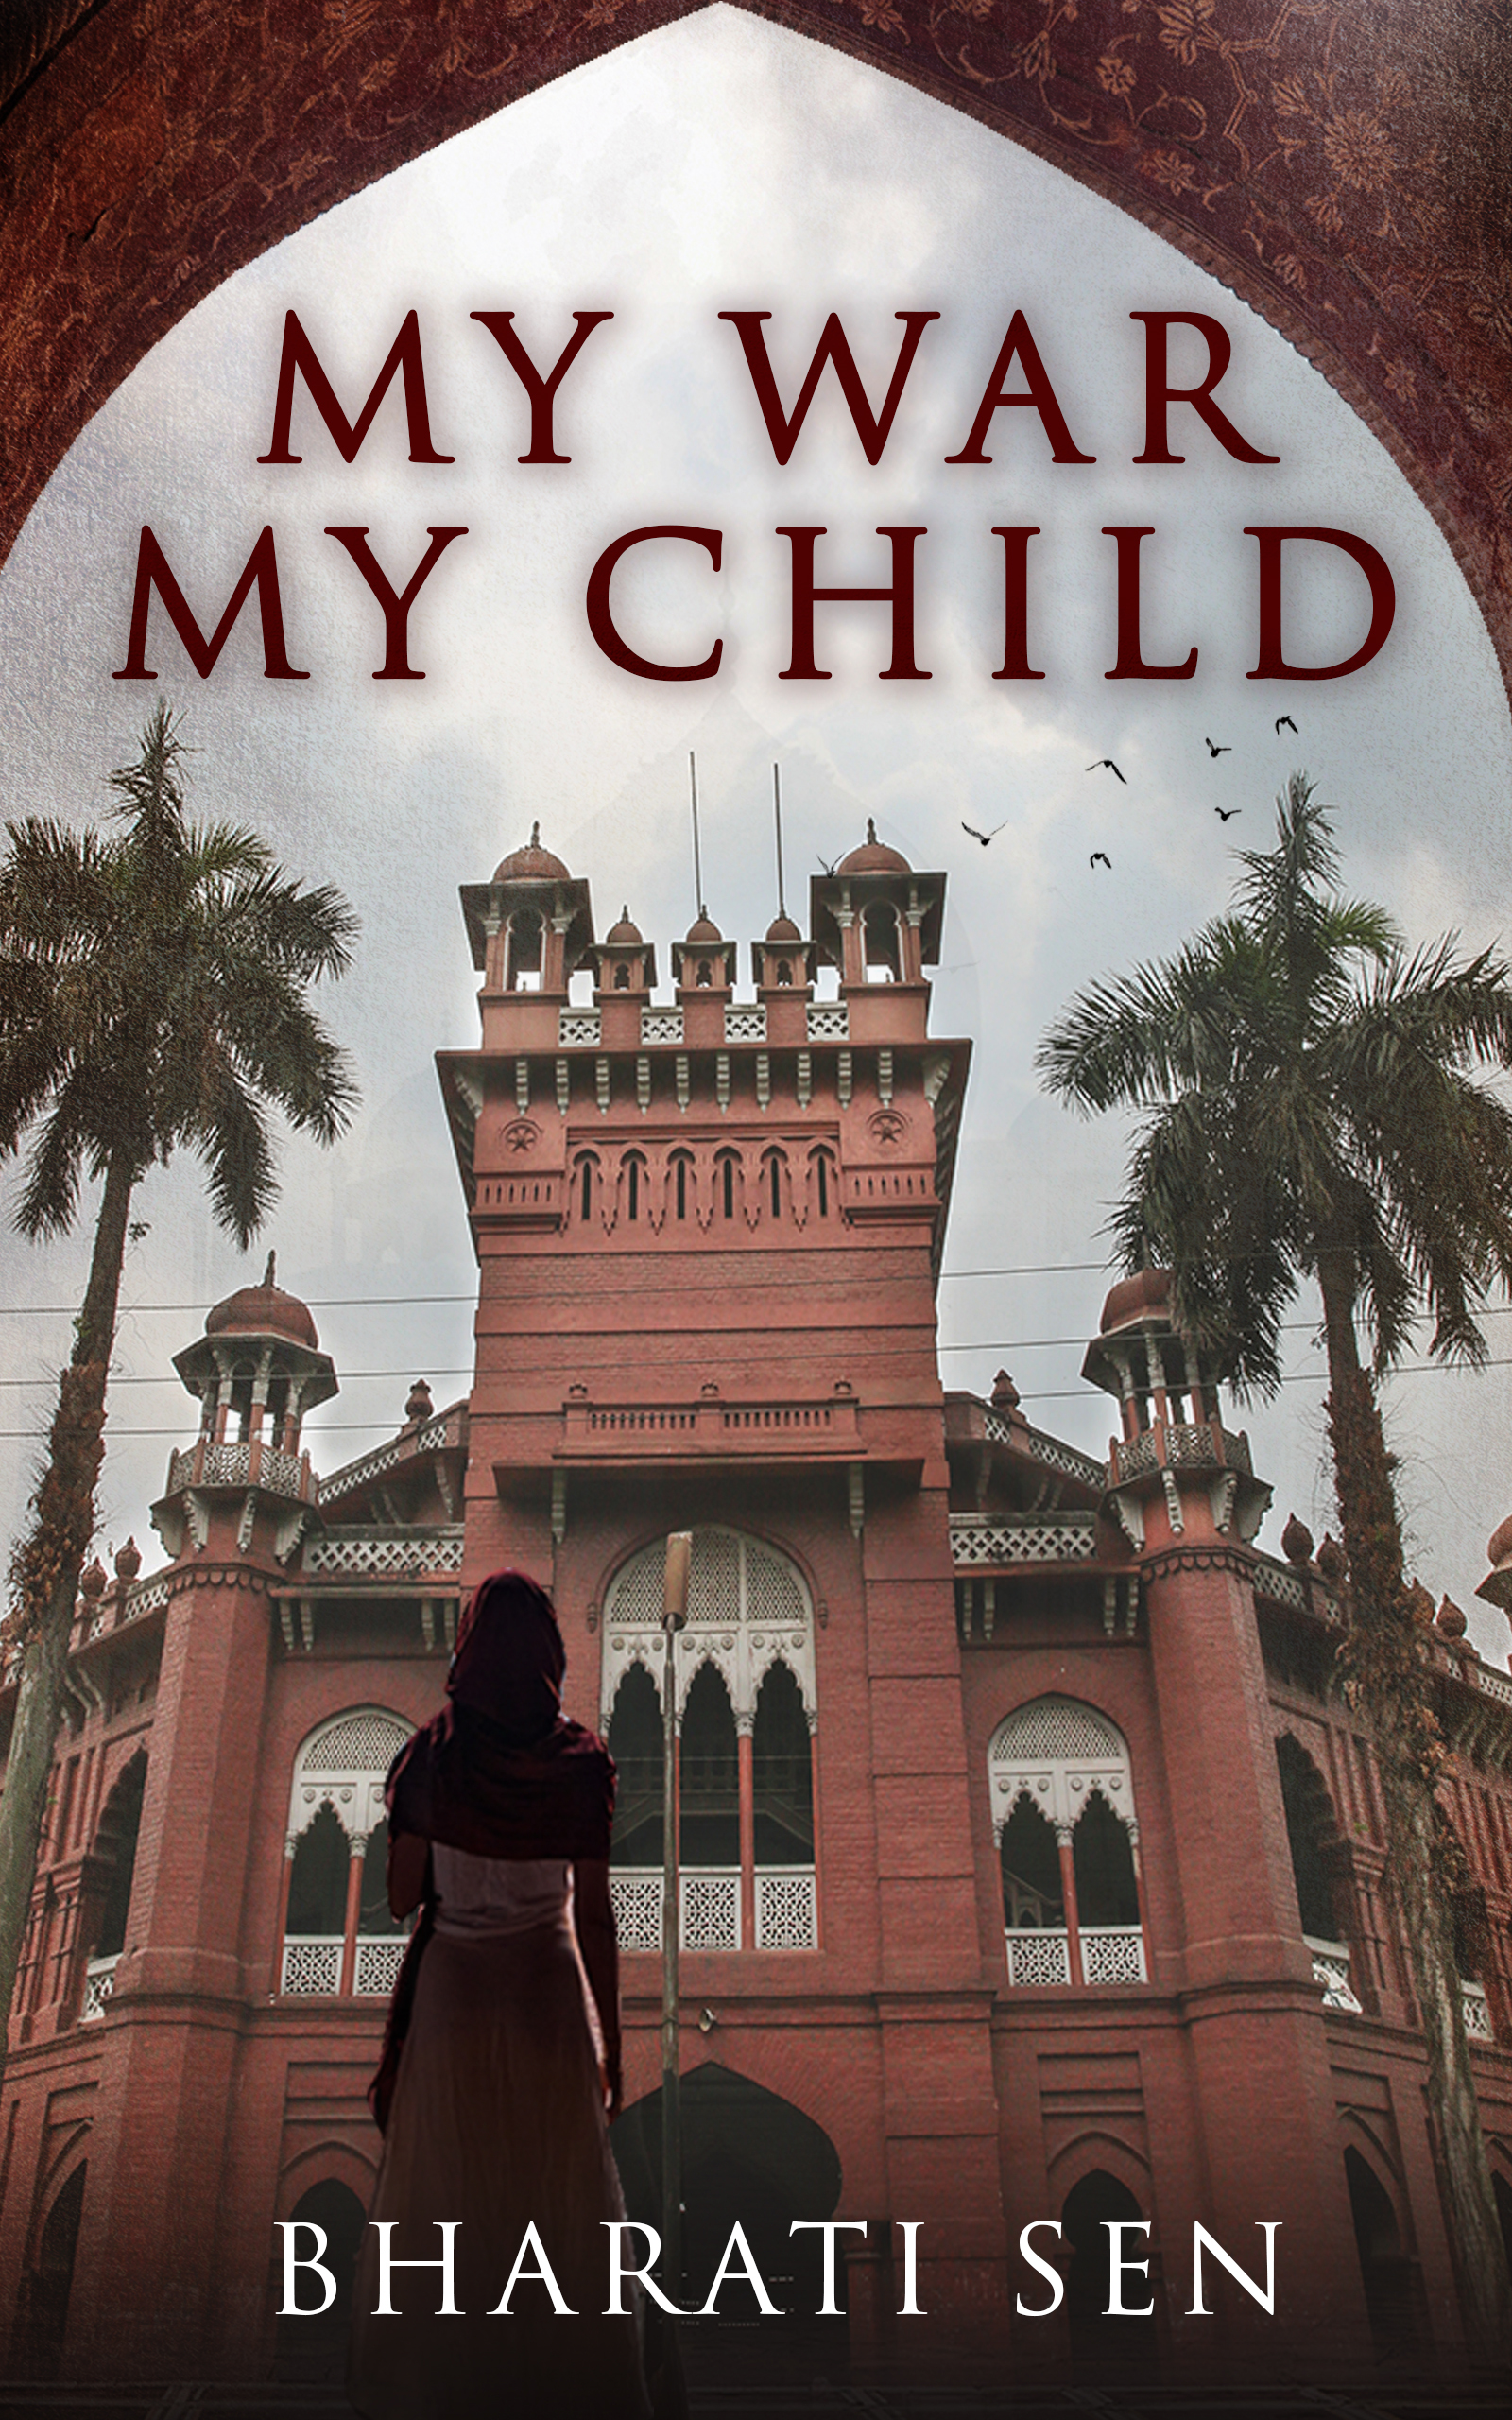 My War, My Child by Bharati Sen